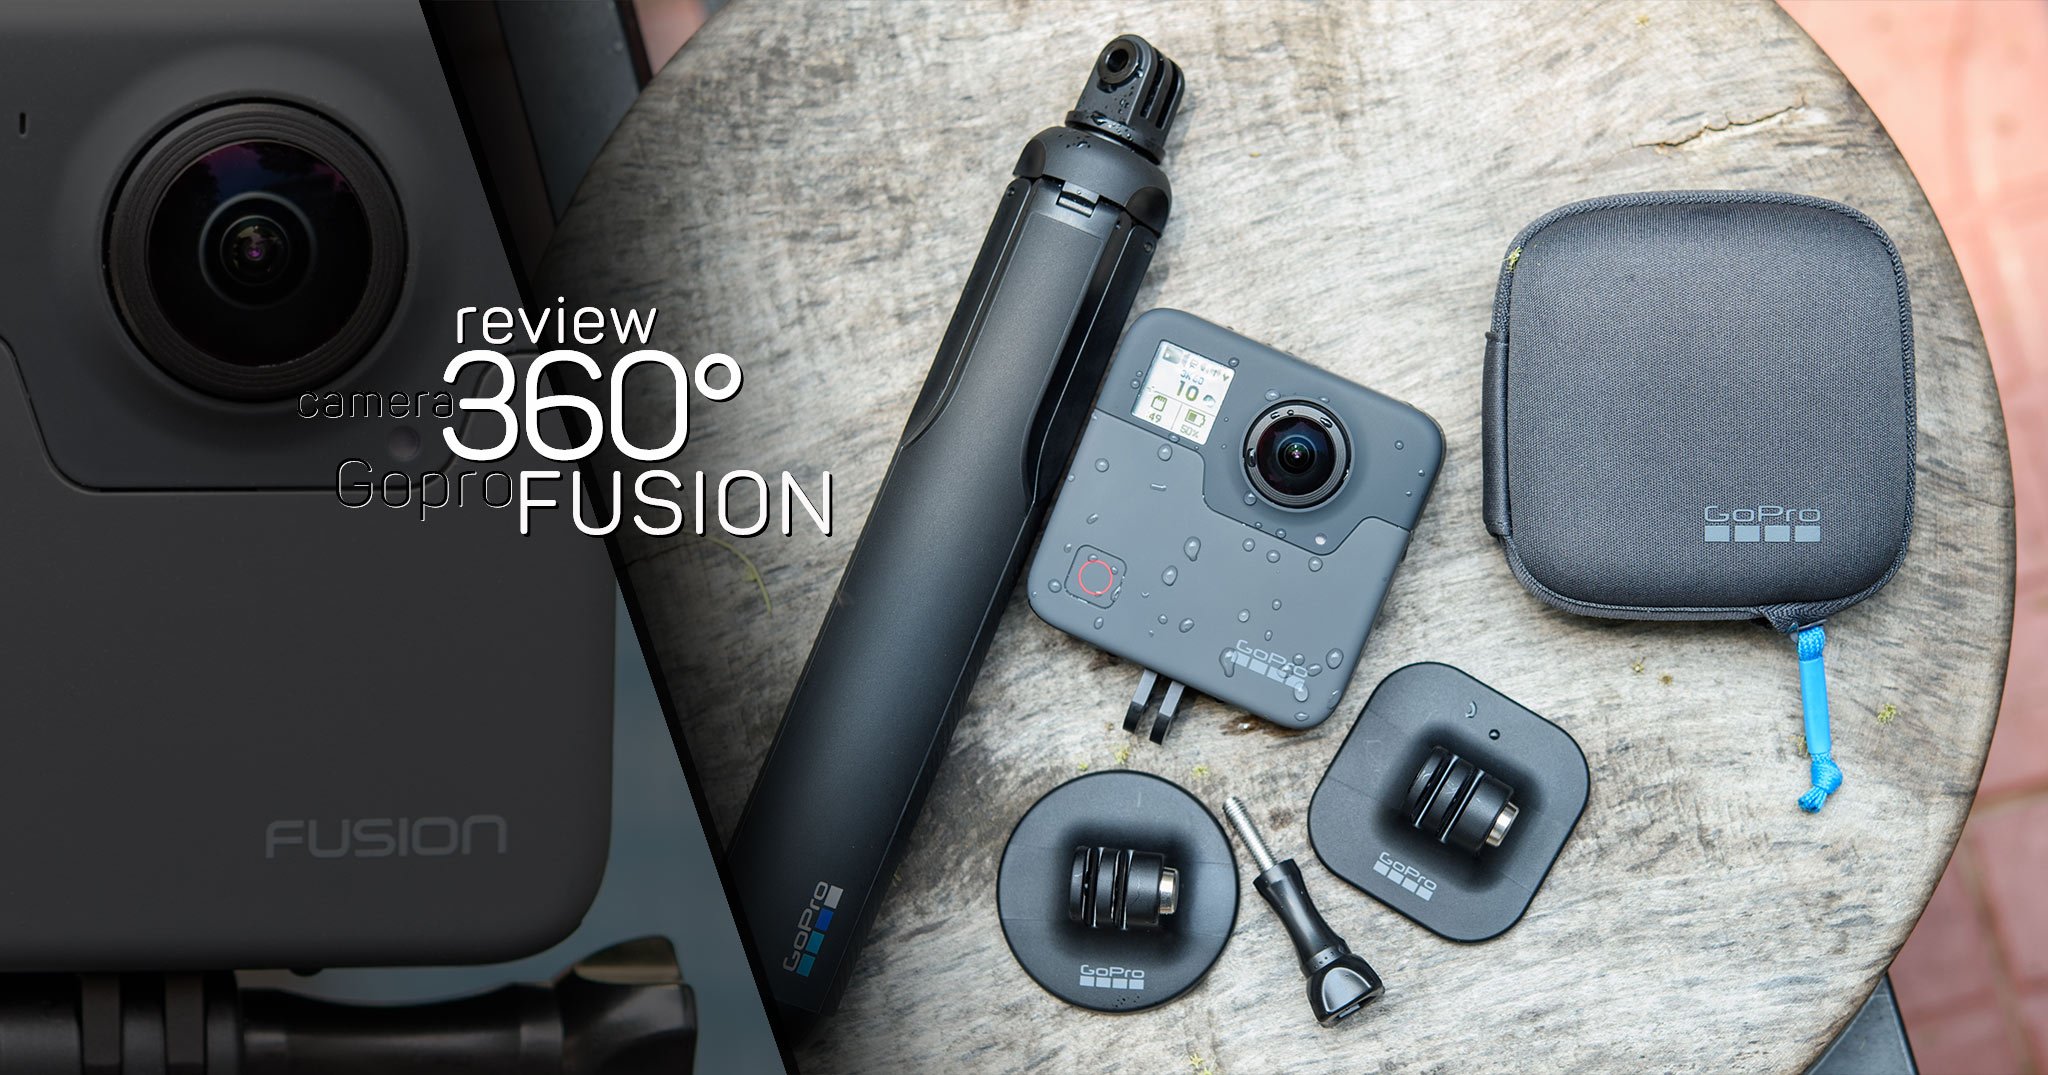 Review Gopro Fusion, chiếc camera 360° có chất lượng ảnh và video rất tốt, nhưng giá cao & app chậm